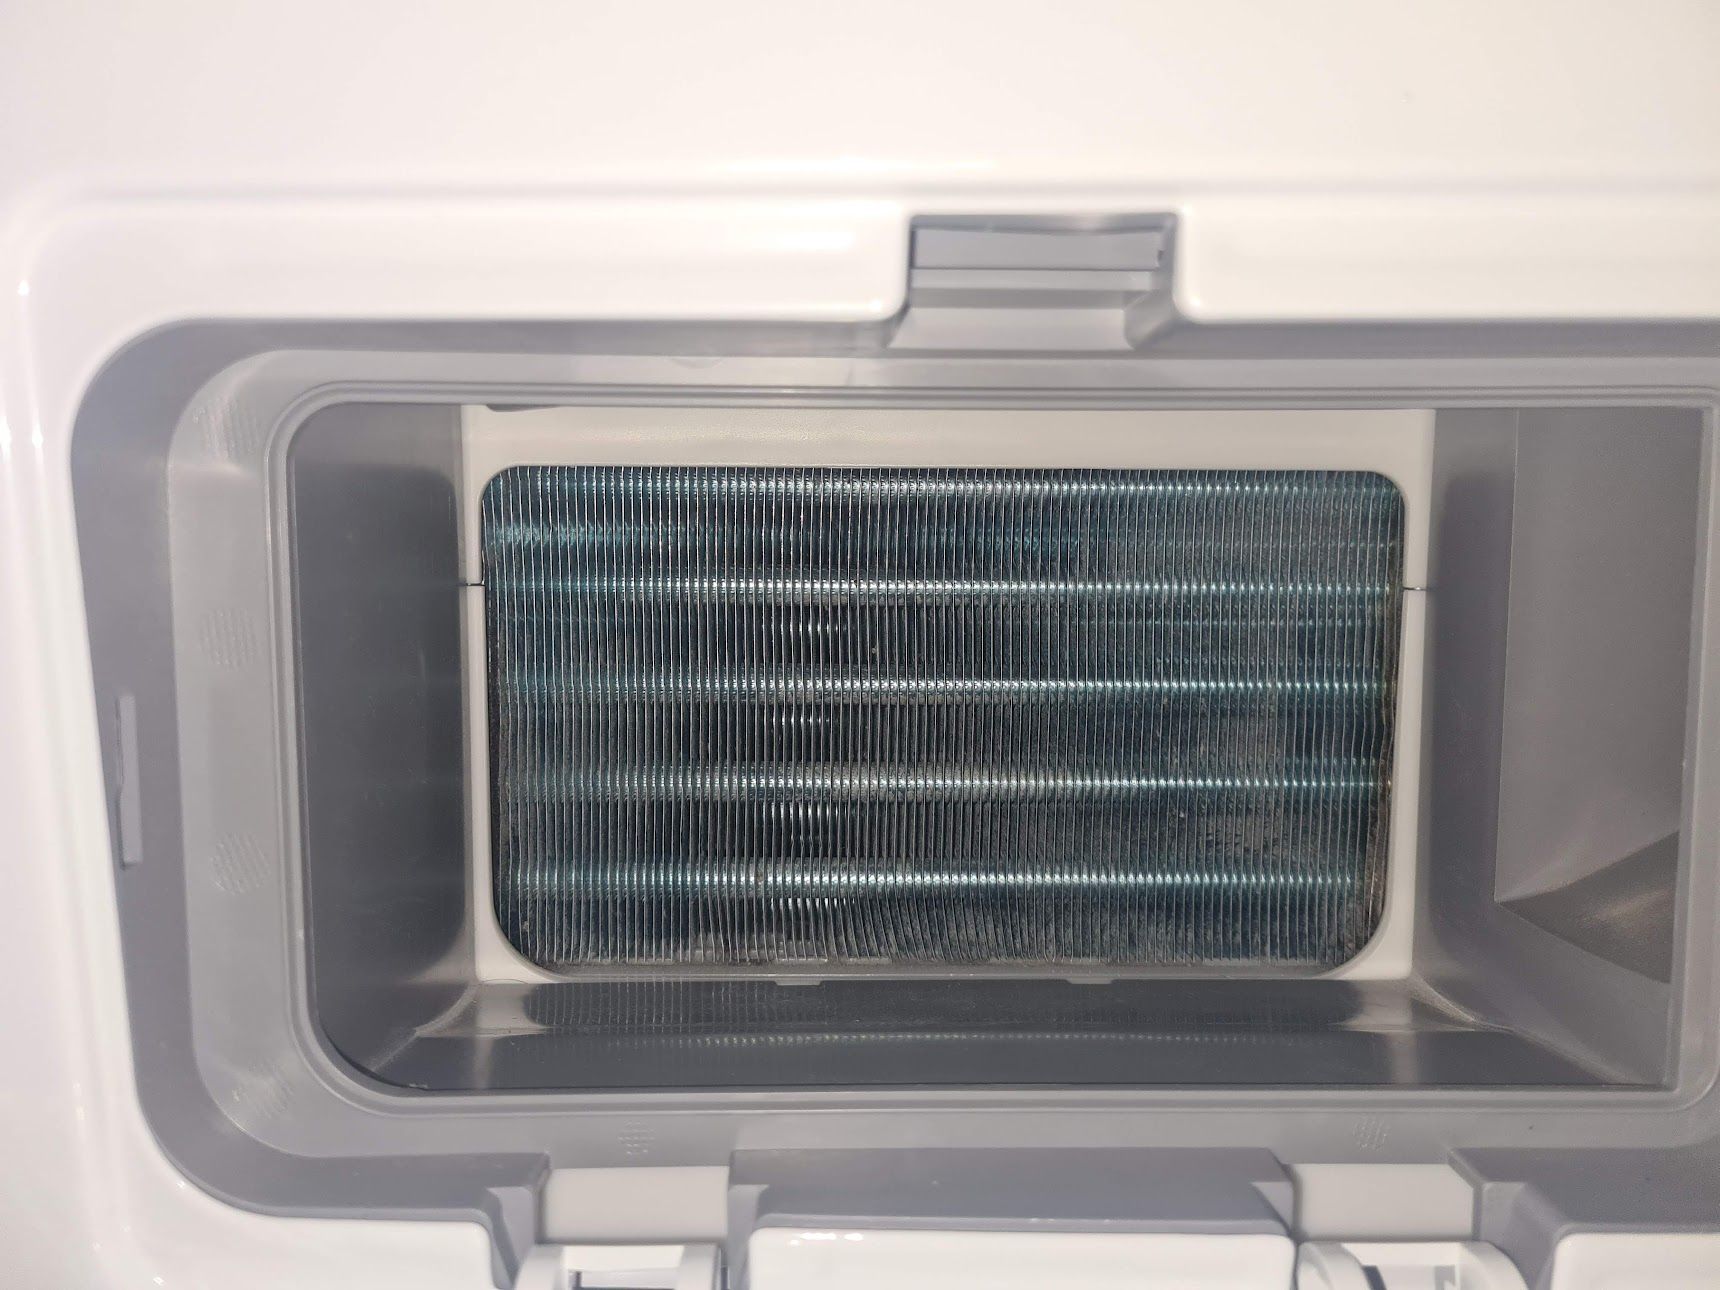 Wärmepumpentrockner mit zusätzlichen Filter schützen - Samsung Community